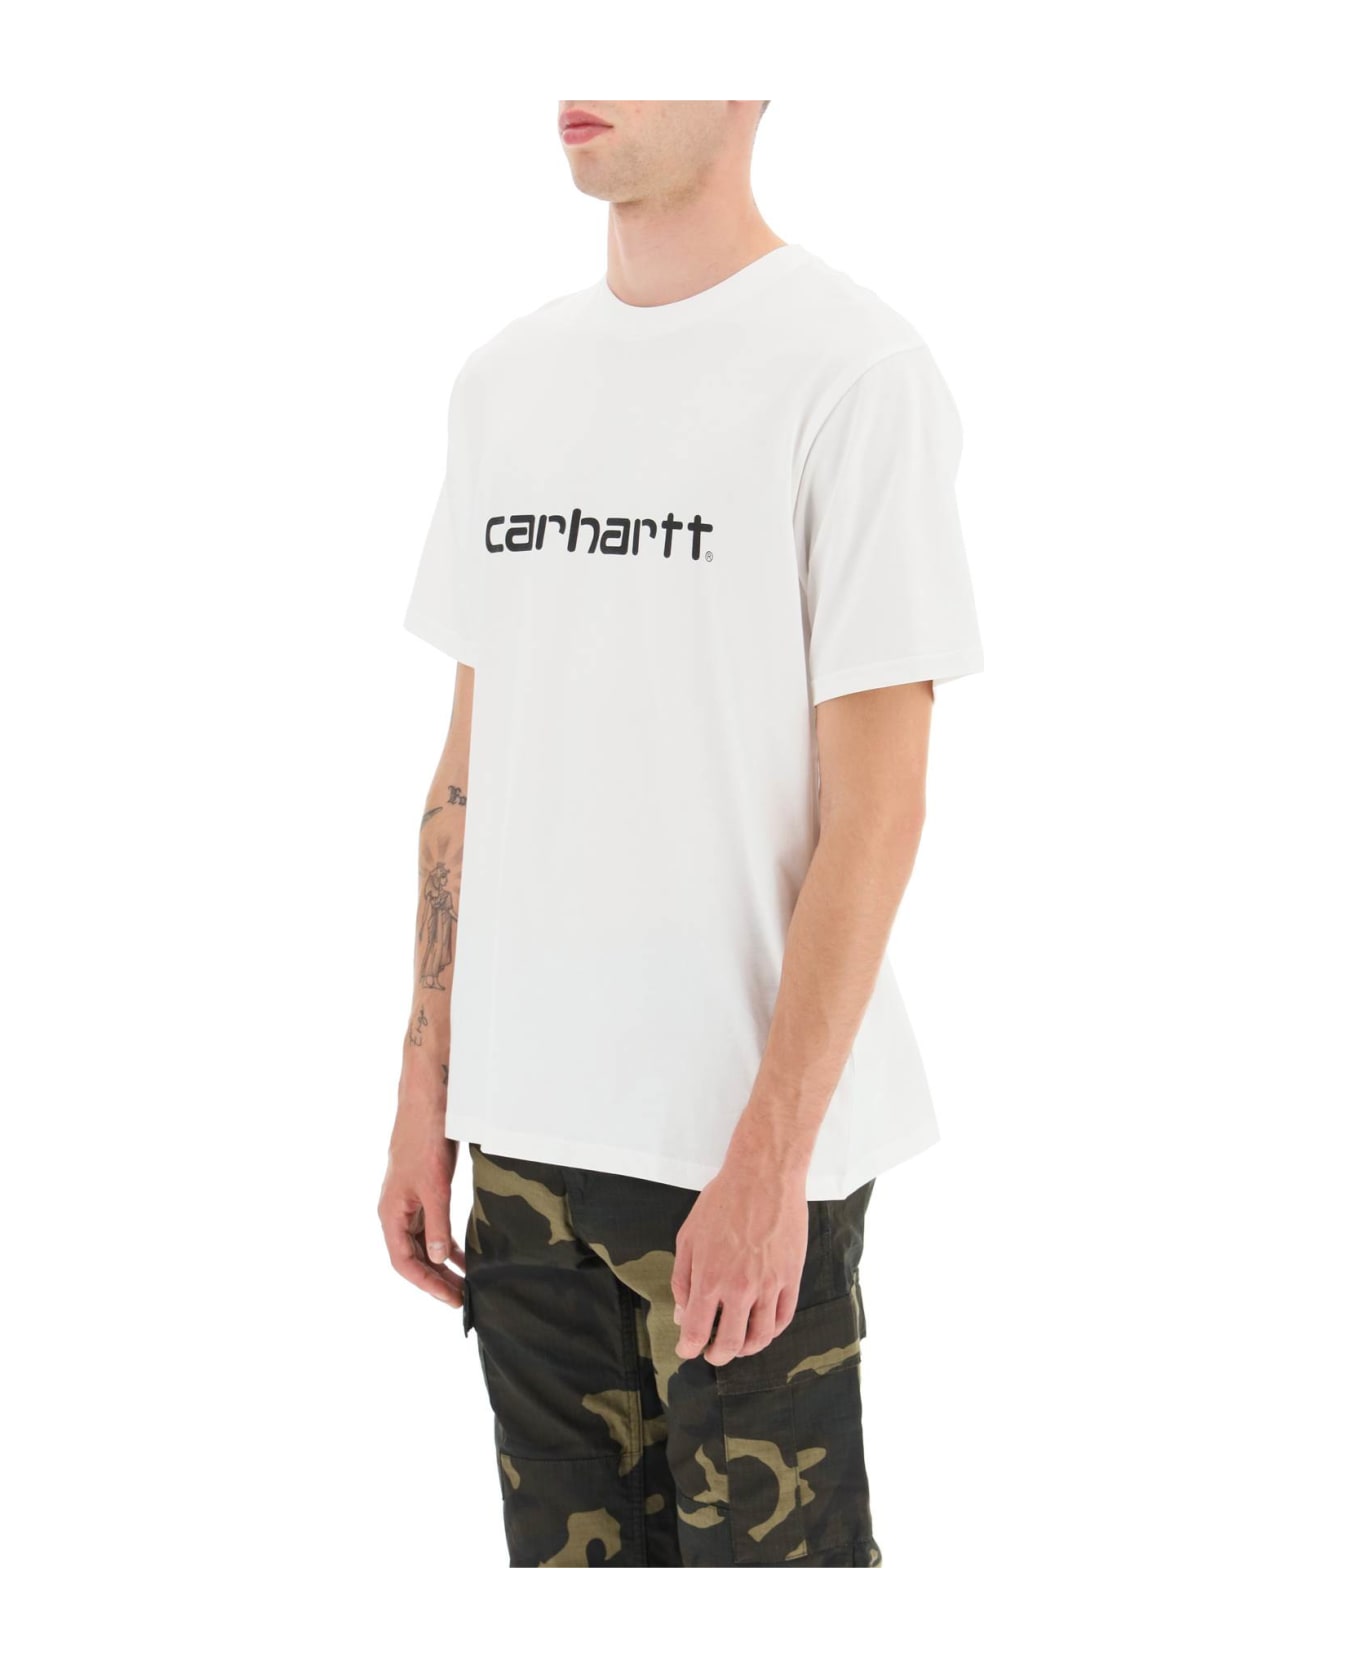 Carhartt Script T-shirt